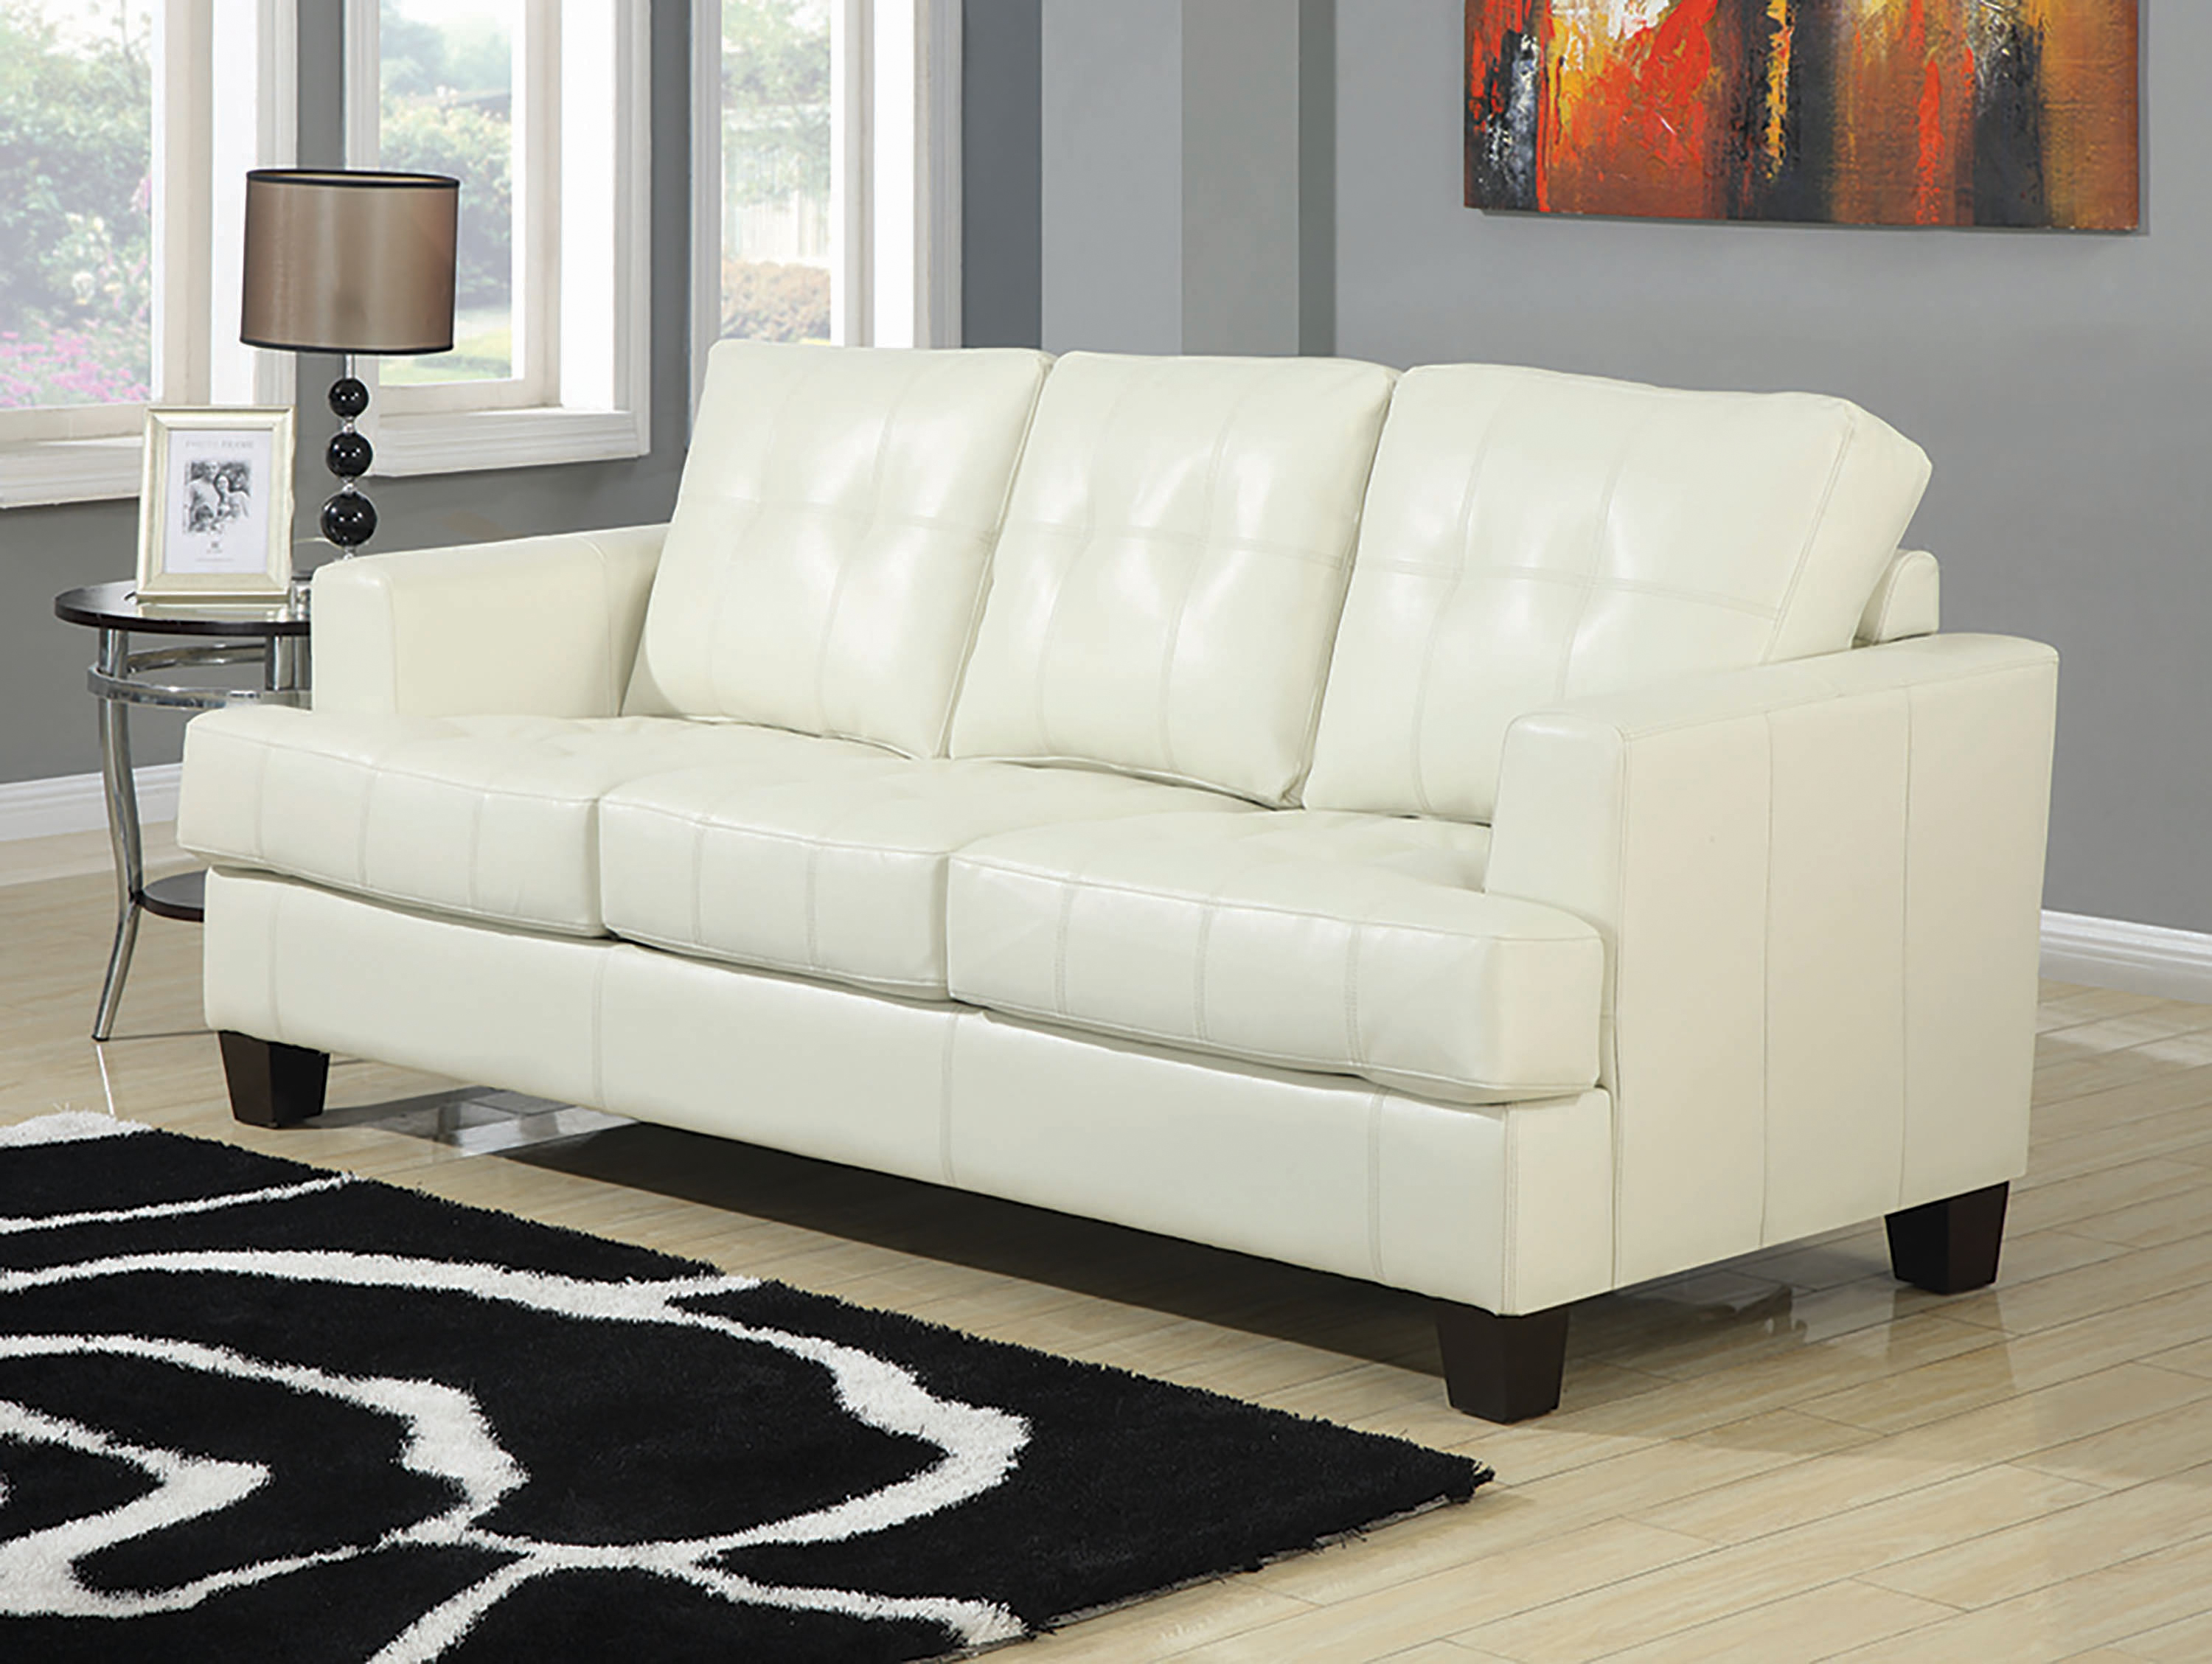 cream colored leather sleeper sofa